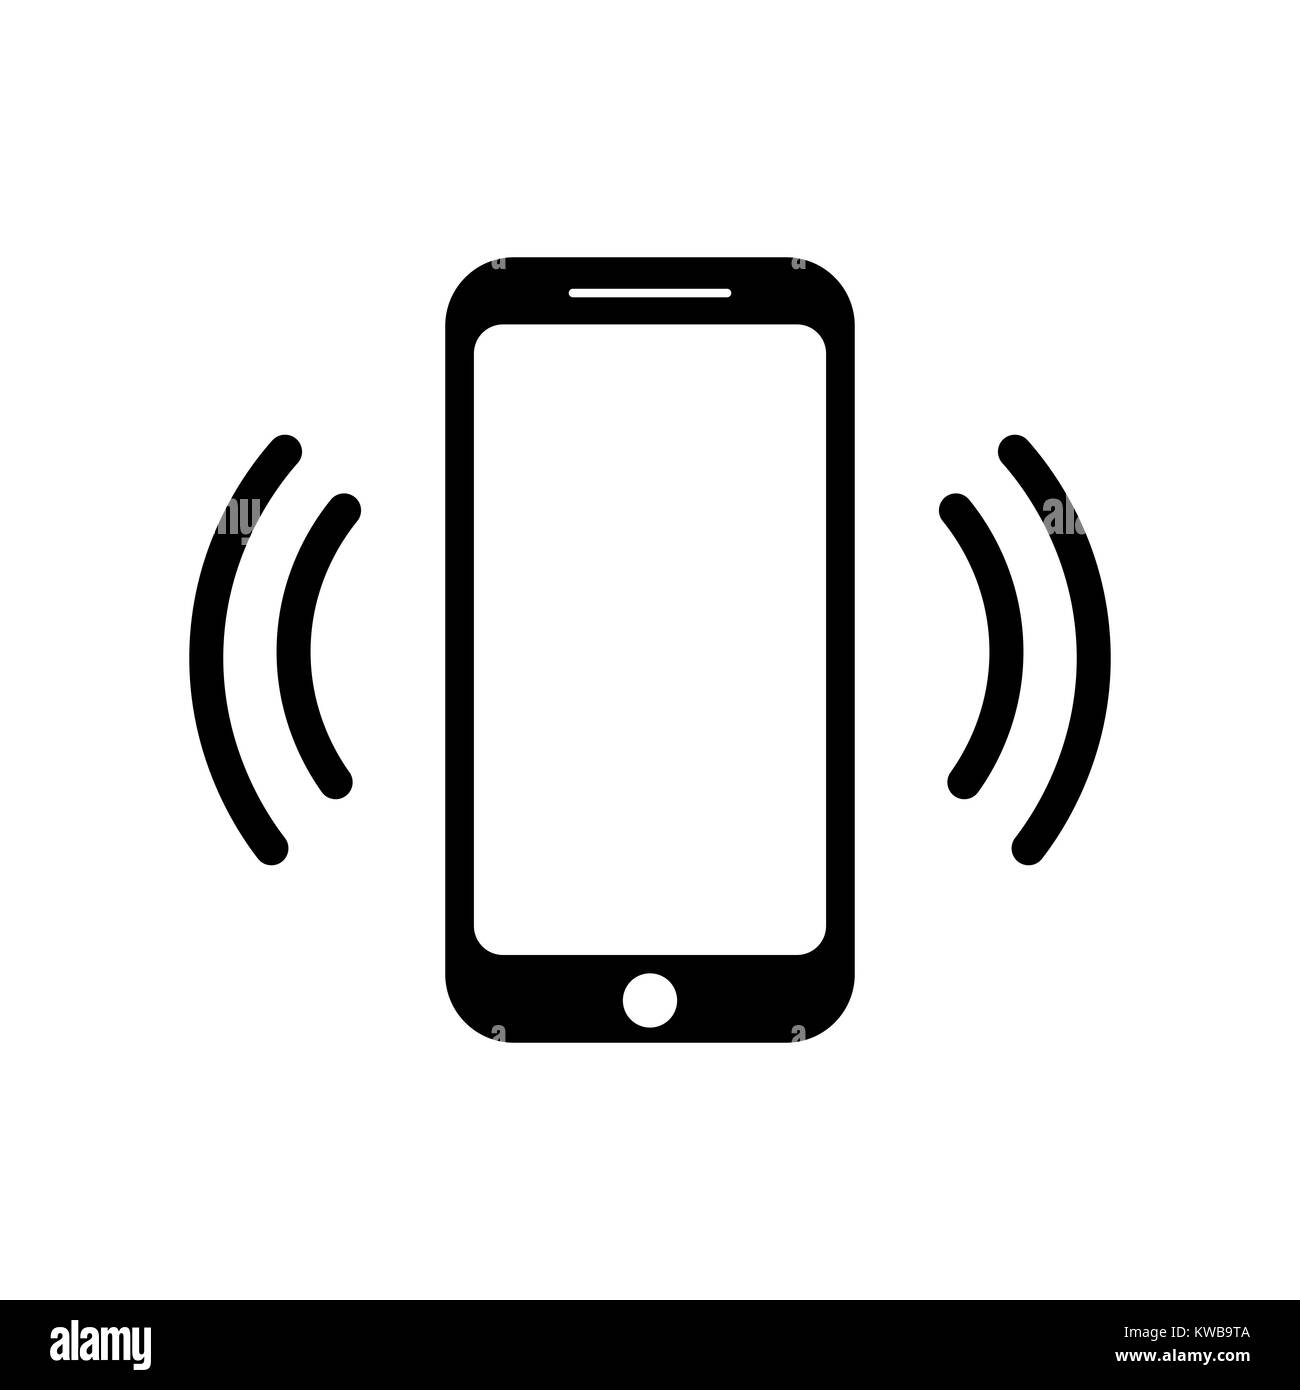 teléfonos inteligentes teléfonos inteligentes en blanco y negro. teléfono  inteligente aislado. ilustración vectorial 9386348 PNG